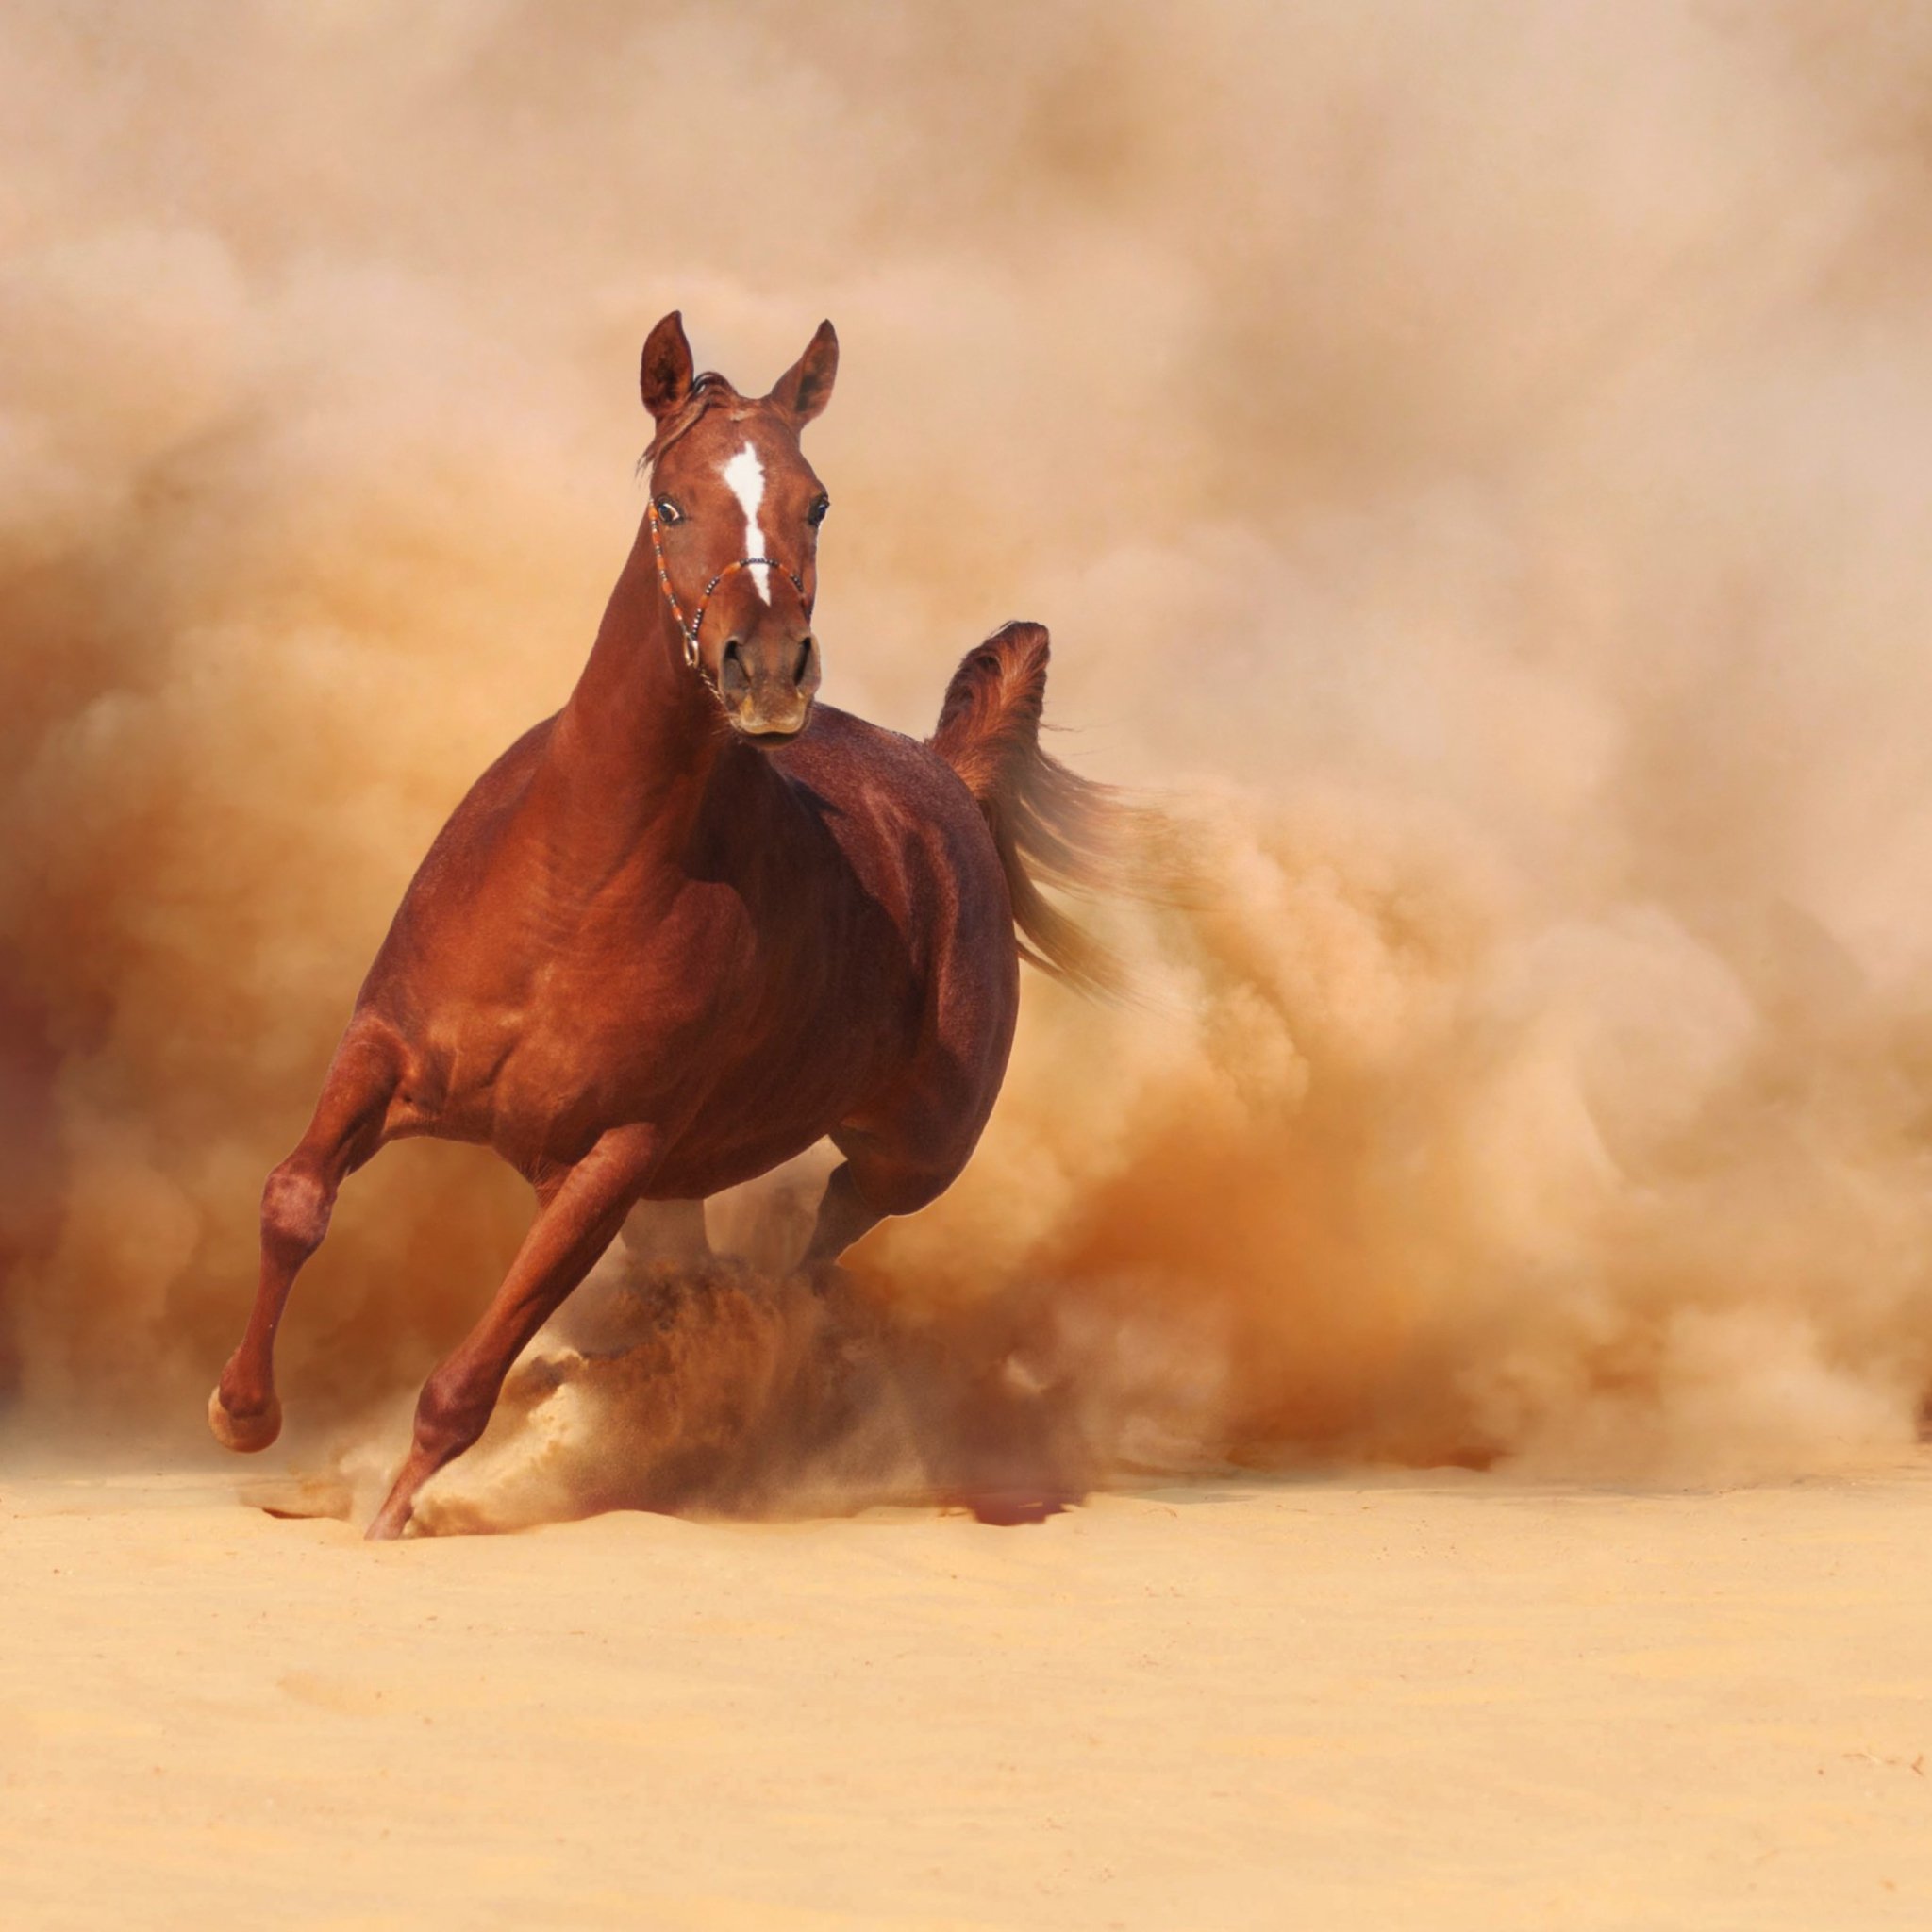 Конь вырвется догонишь а сказанного. Лошадь бежит. Обои лошади. Пыль на поле от копыт. Лошадь галоп.